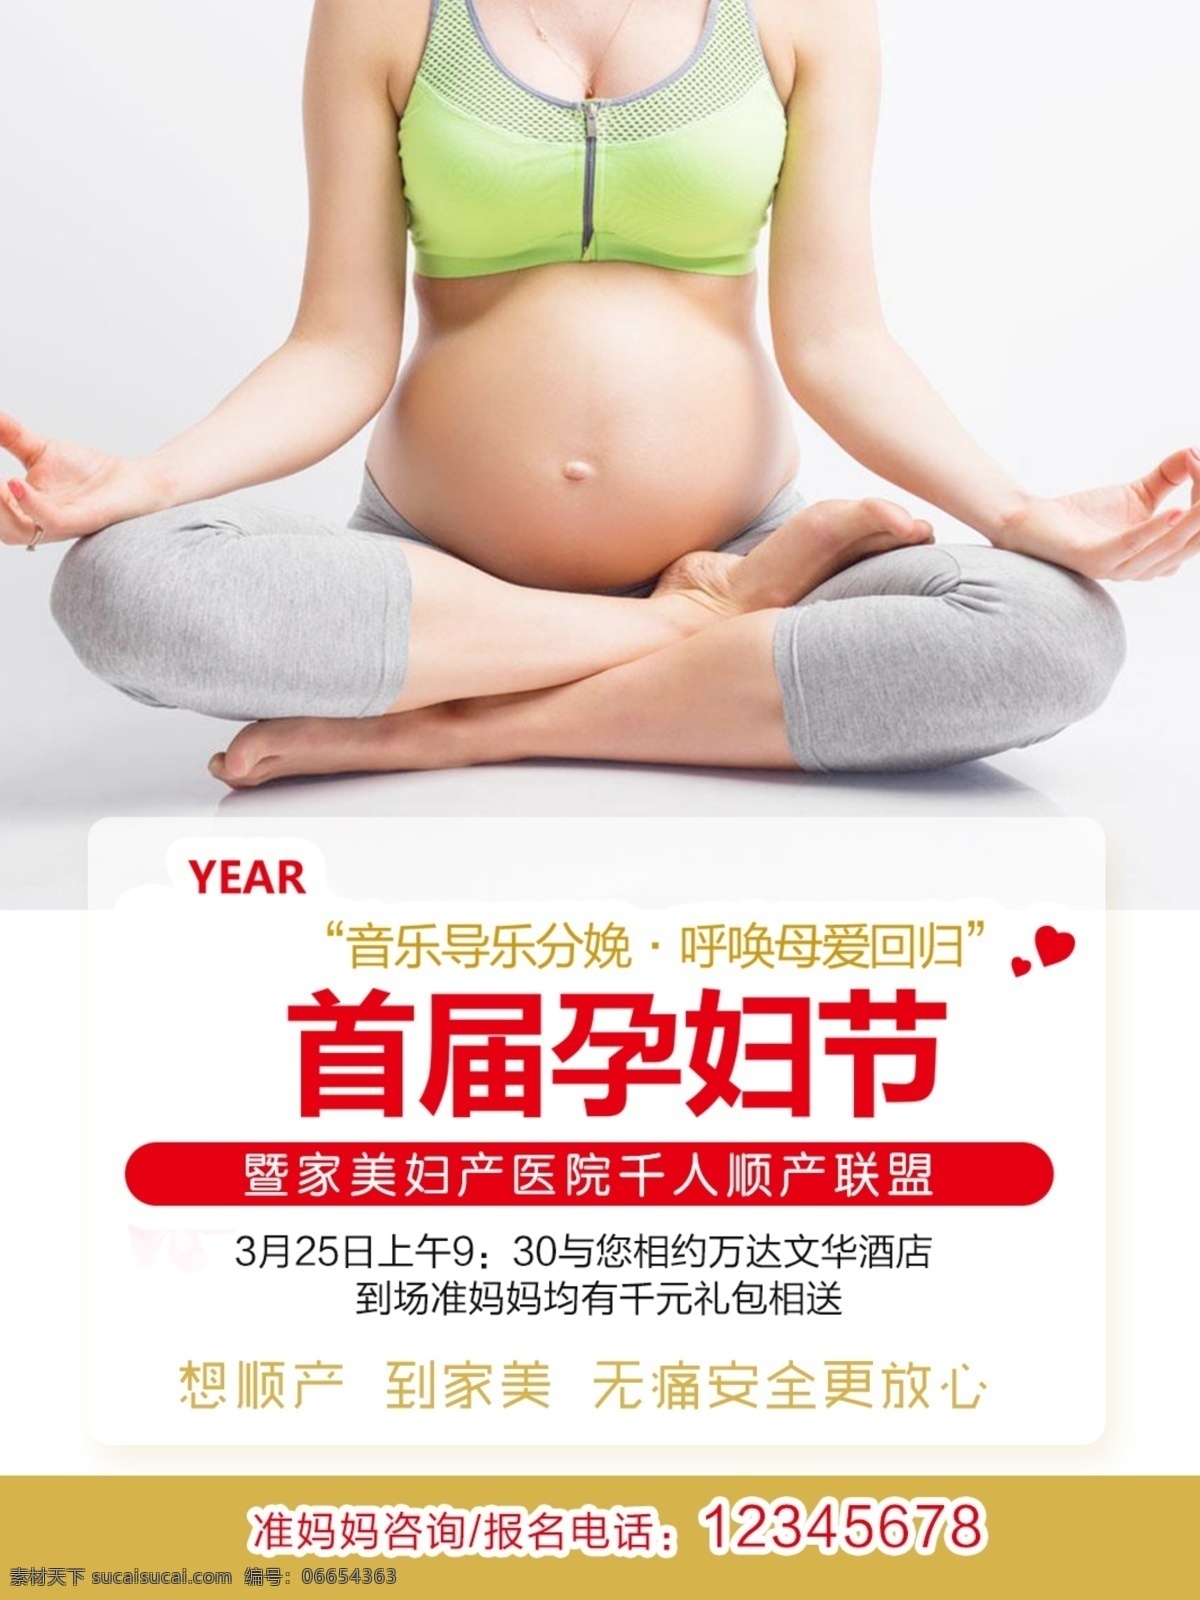 孕妇节 孕妇活动 怀孕女人 孕婴用品店 妇产医院 妇产科 孕妇瑜伽 世界节日